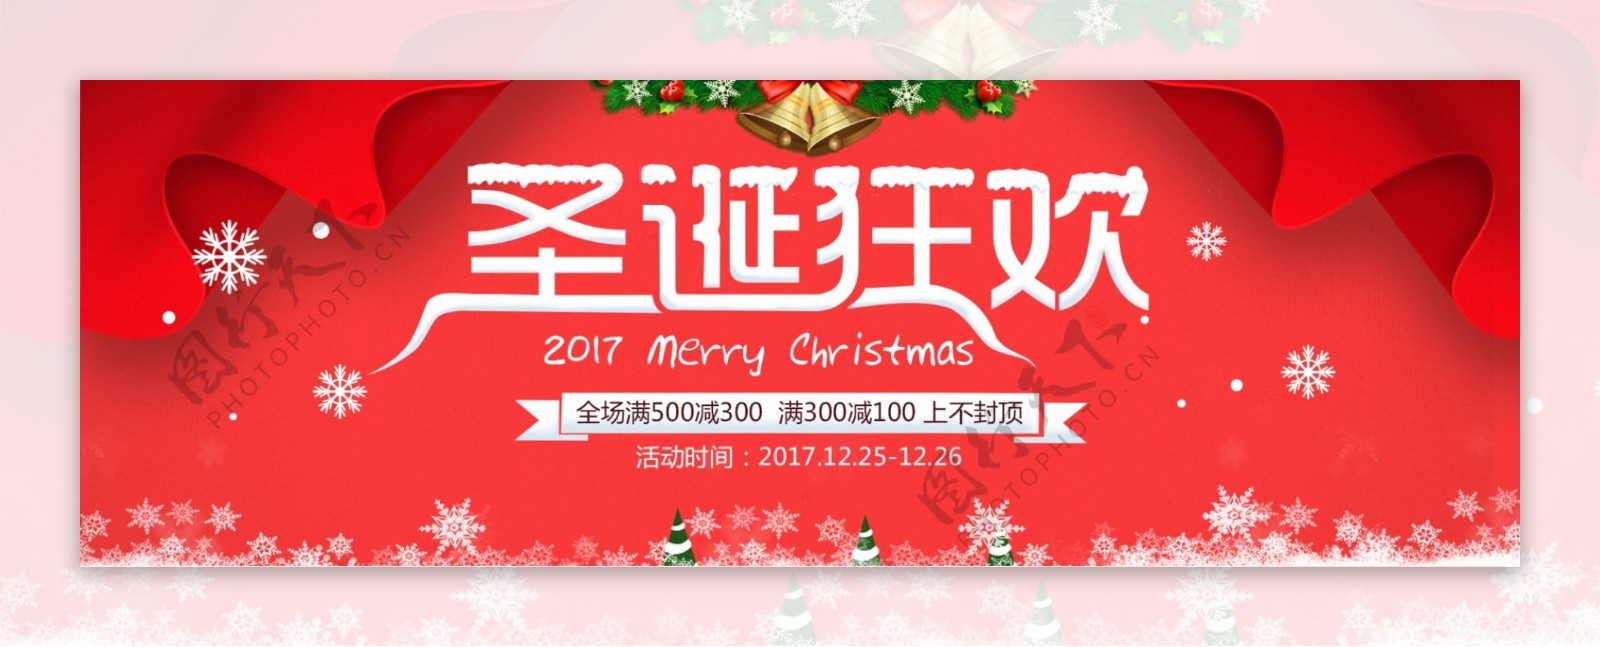 淘宝圣诞节促销节日海报banner